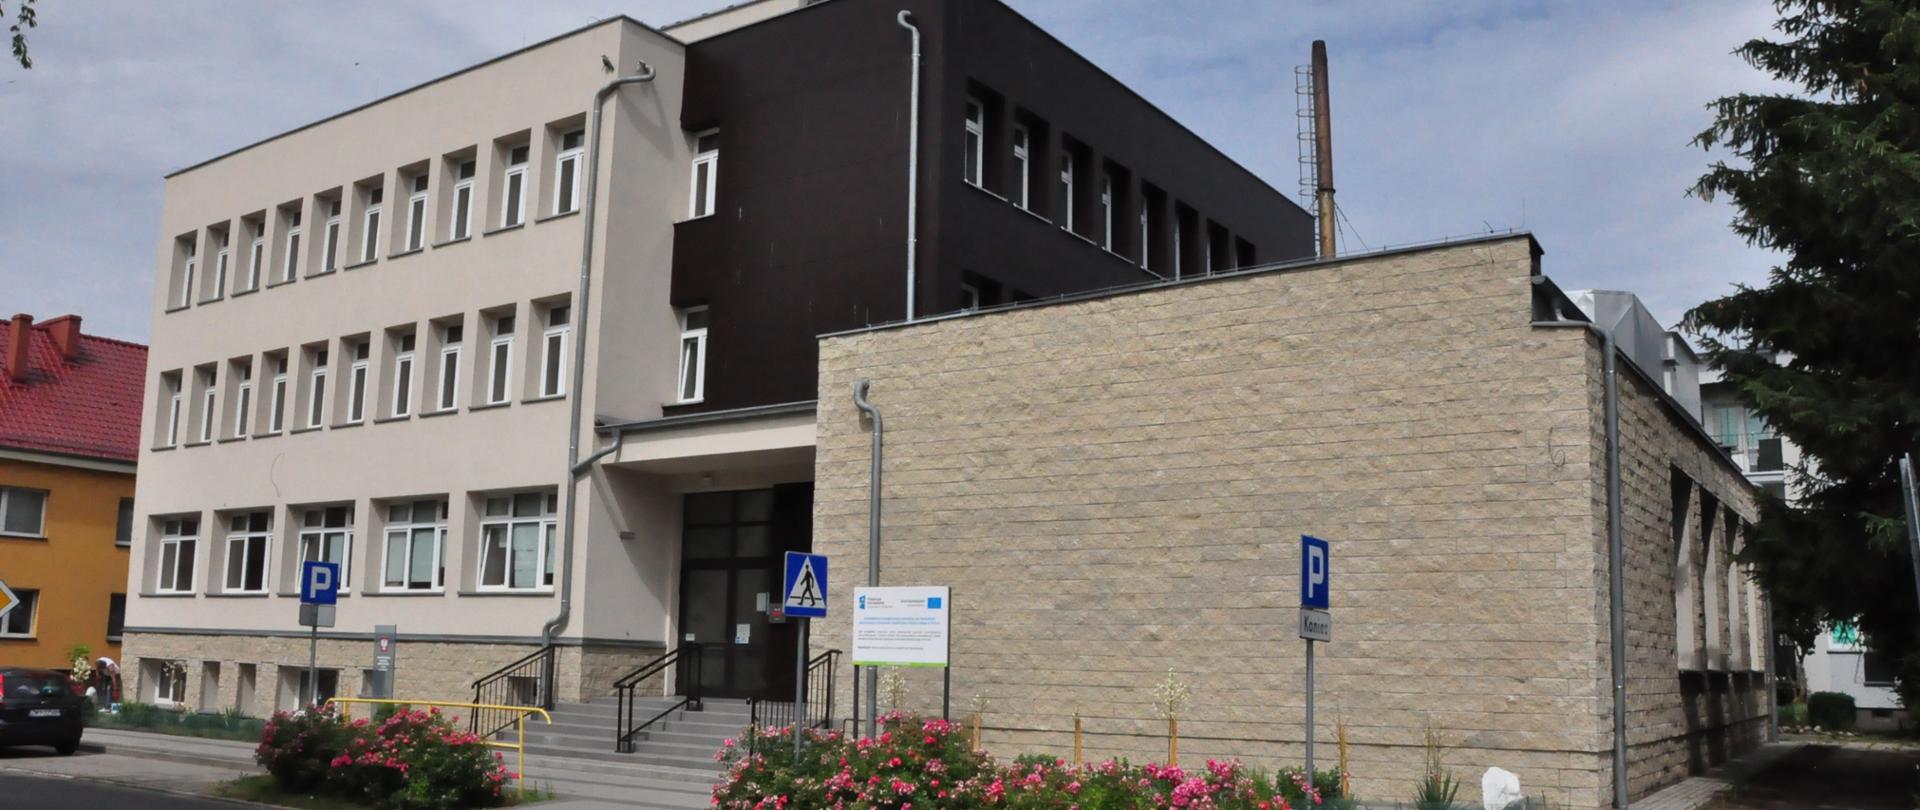 Zdjęcie przedstawia budynek szkoły od strony ulicy Witolda Pileckiego, główne wejście do budynku.